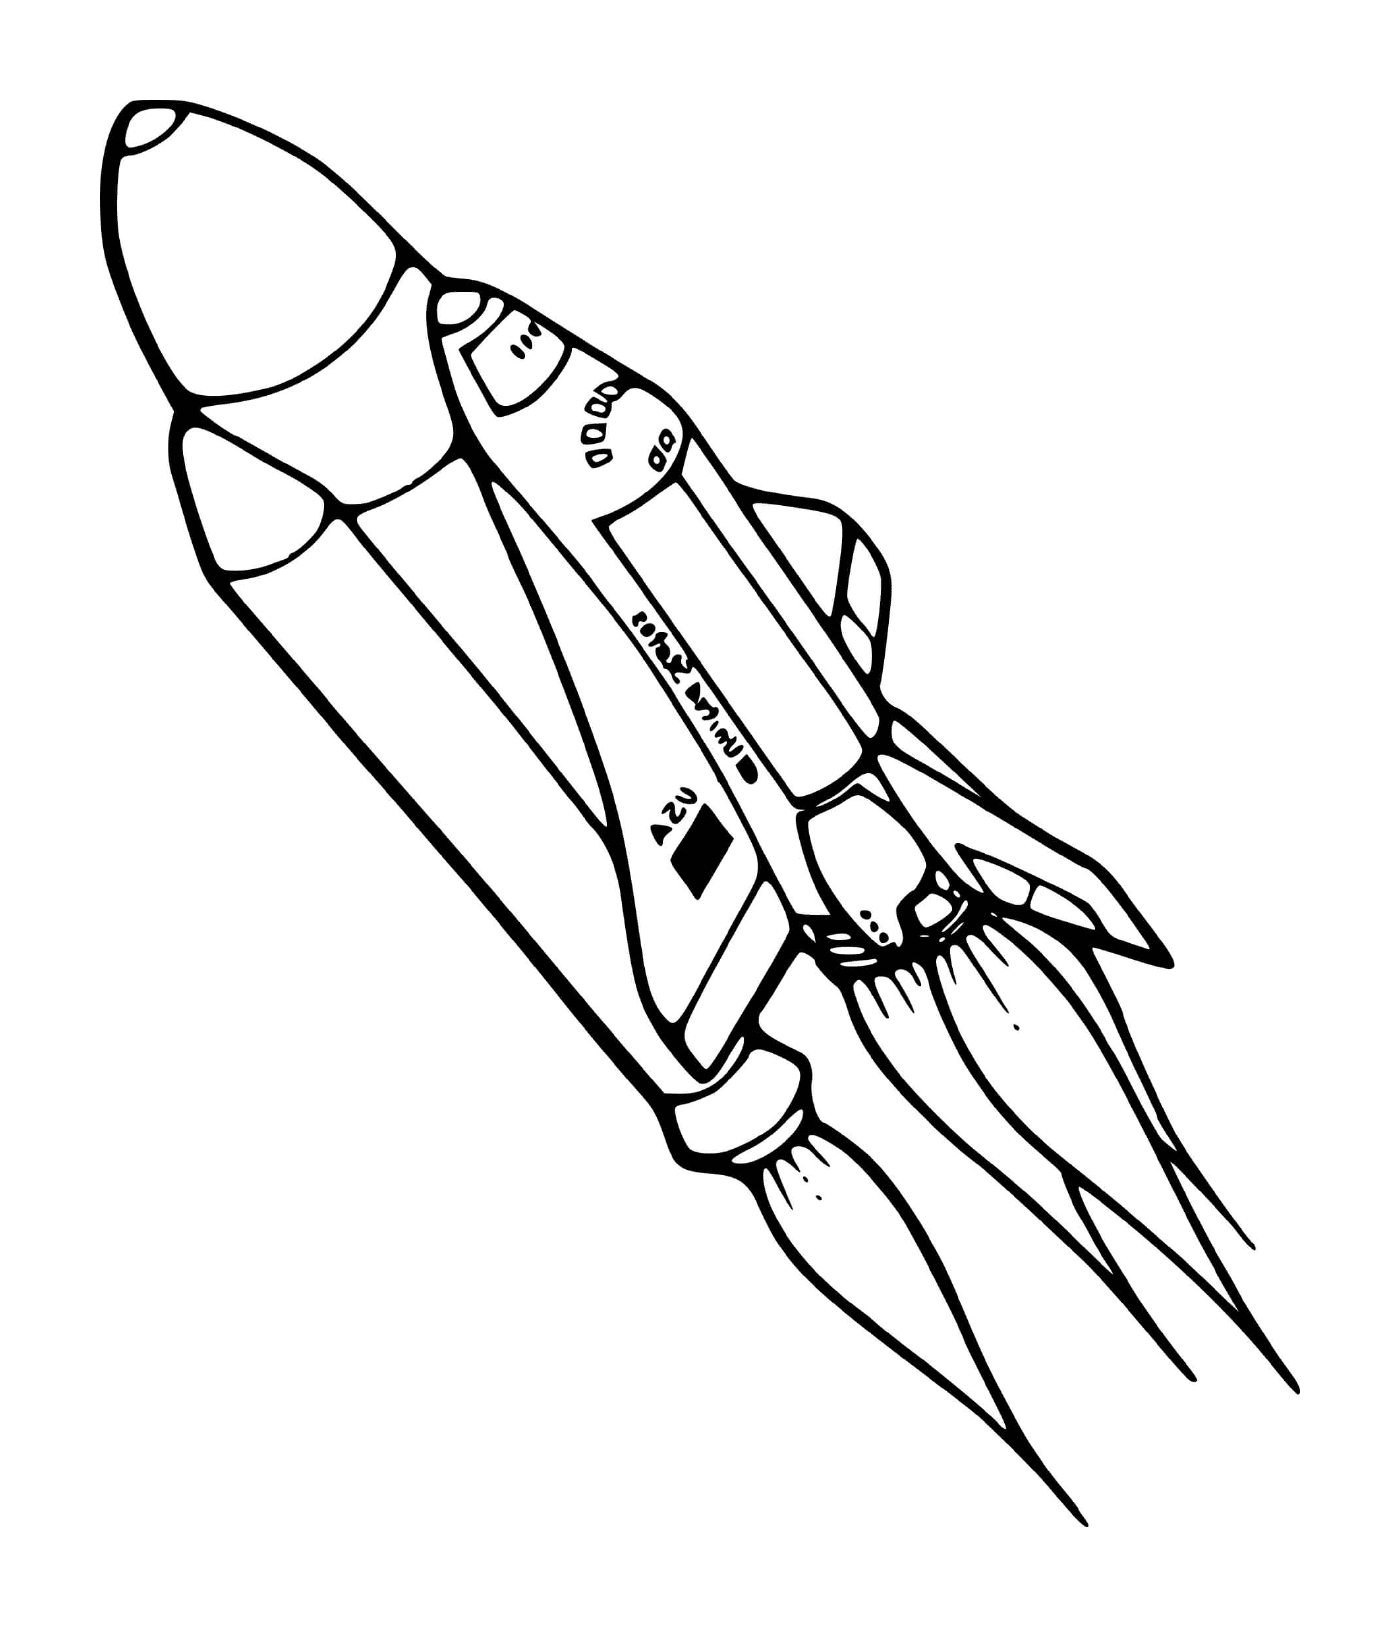  Cohete espacial de la NASA 